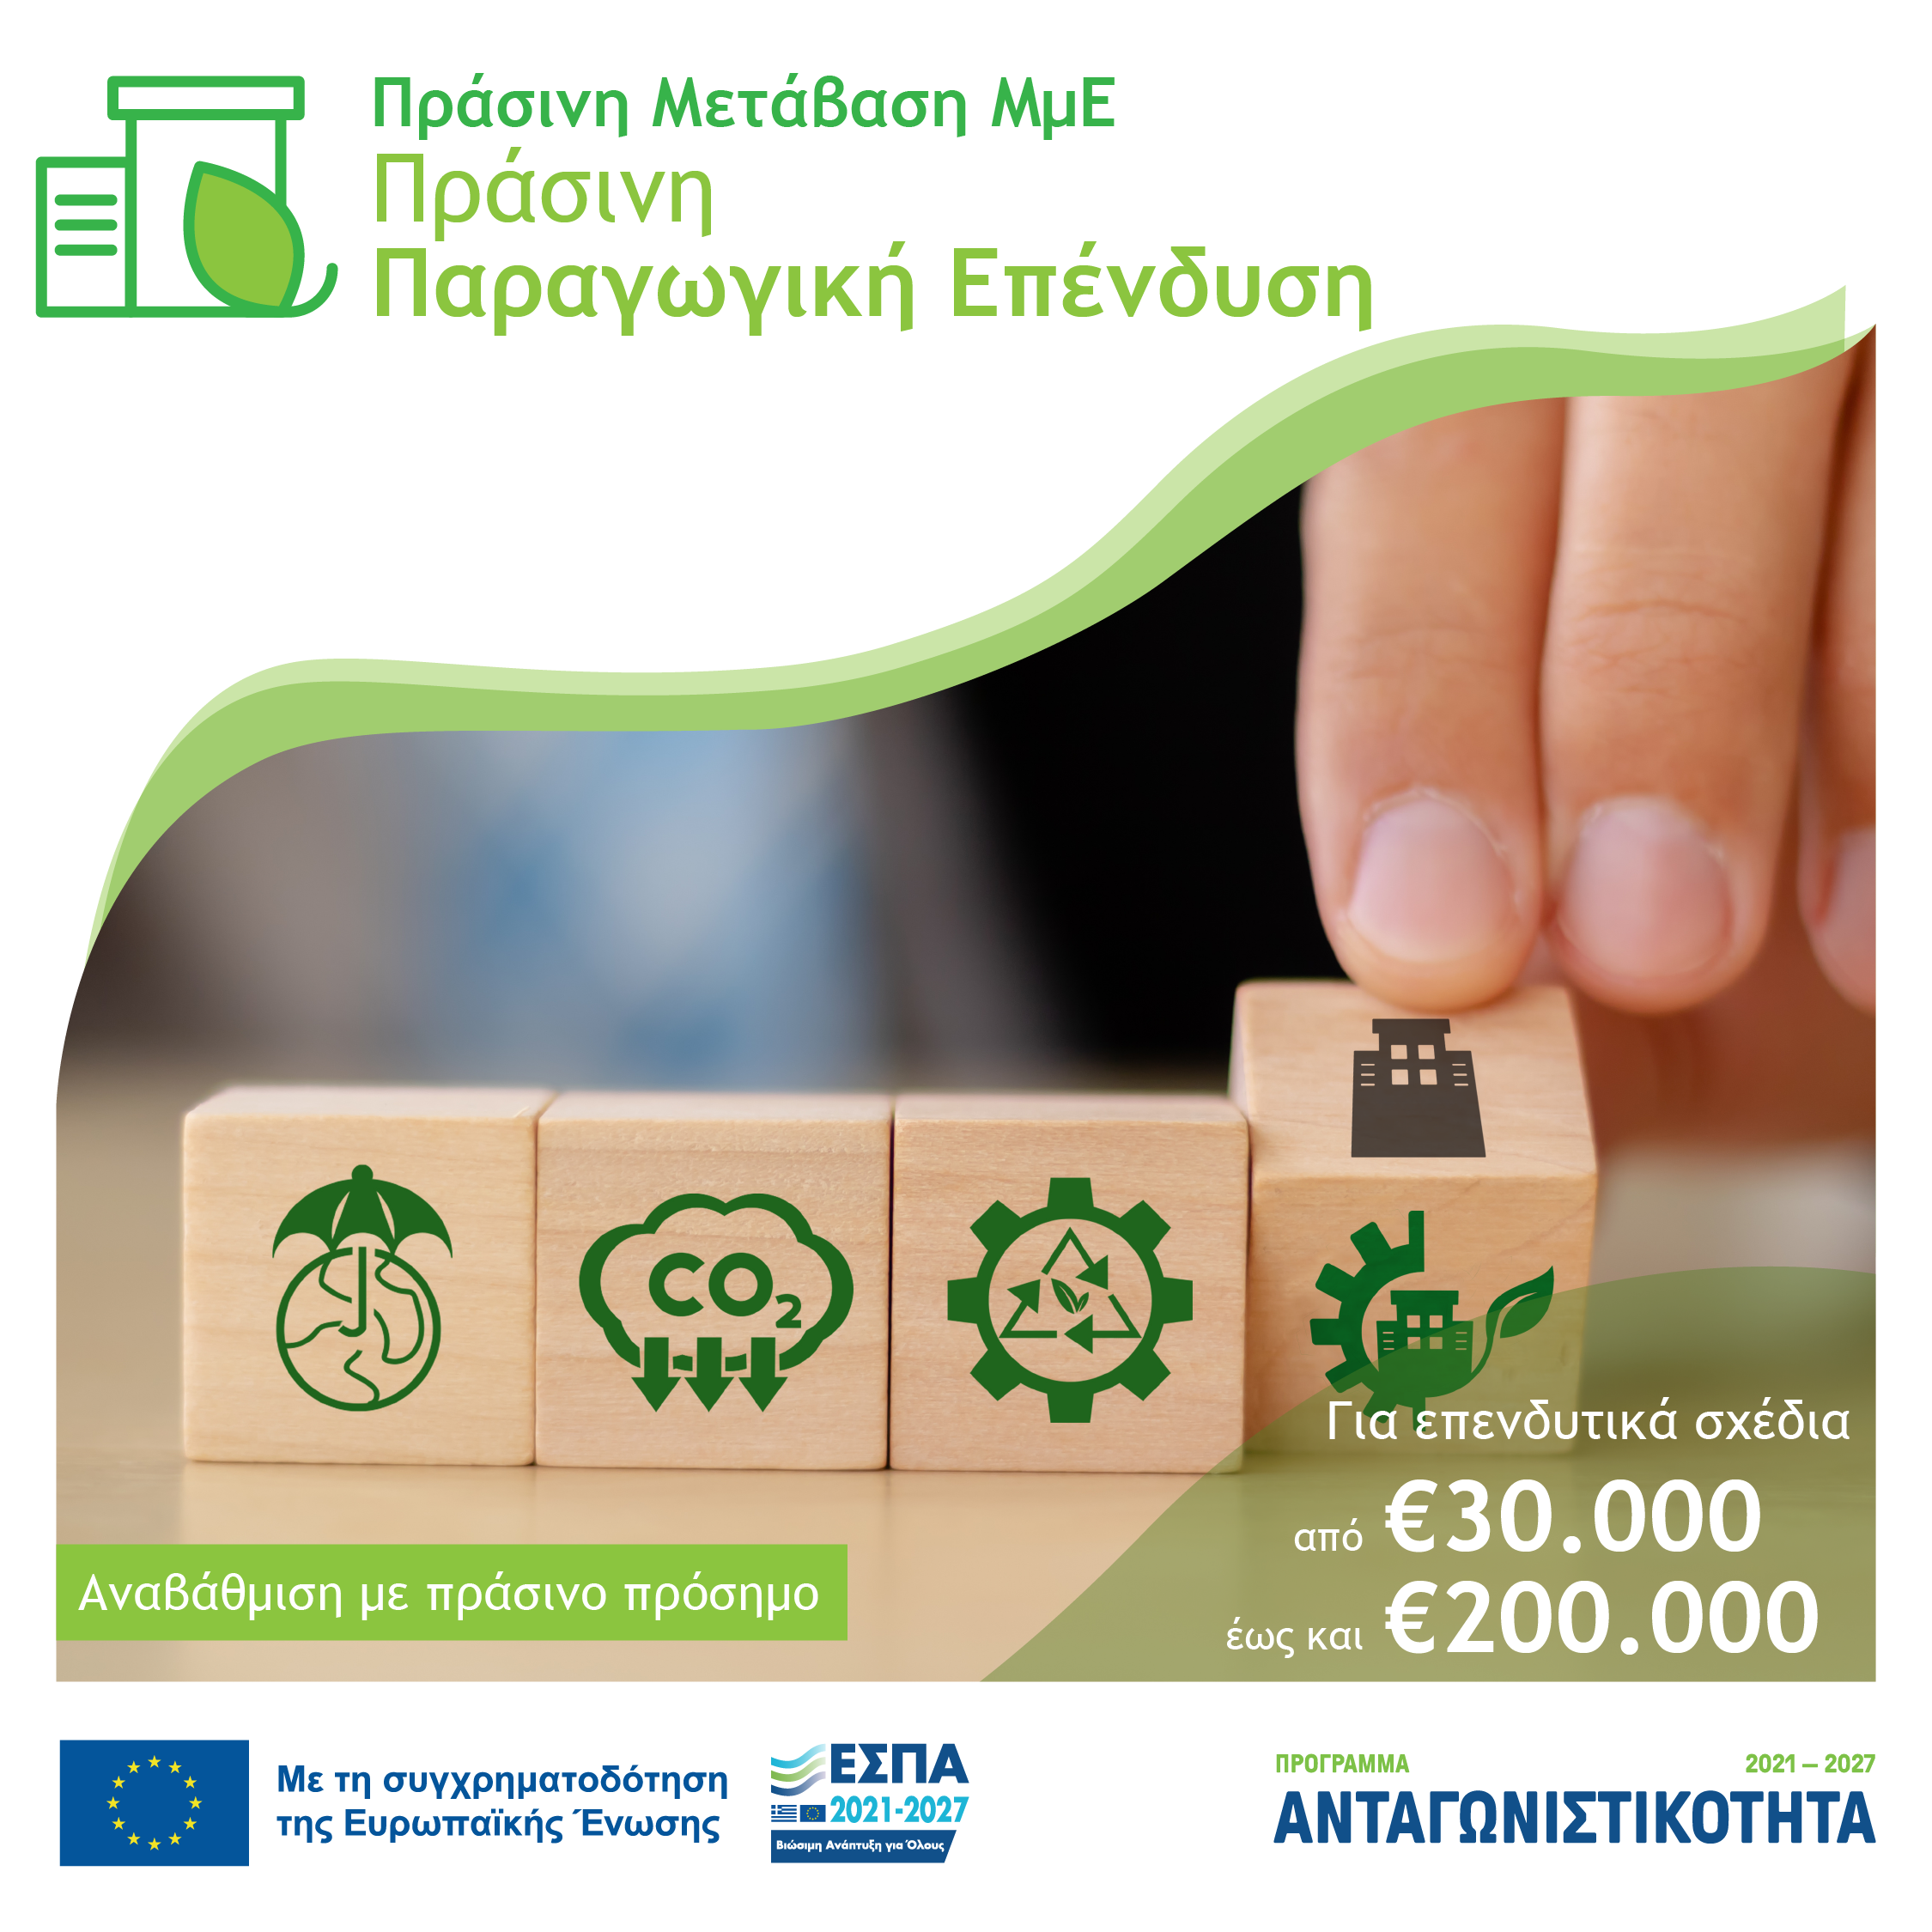 6η Απόφαση Έγκρισης Αποτελεσμάτων Αξιολόγησης για την Δράση «Πράσινη Παραγωγική Επένδυση ΜμΕ»